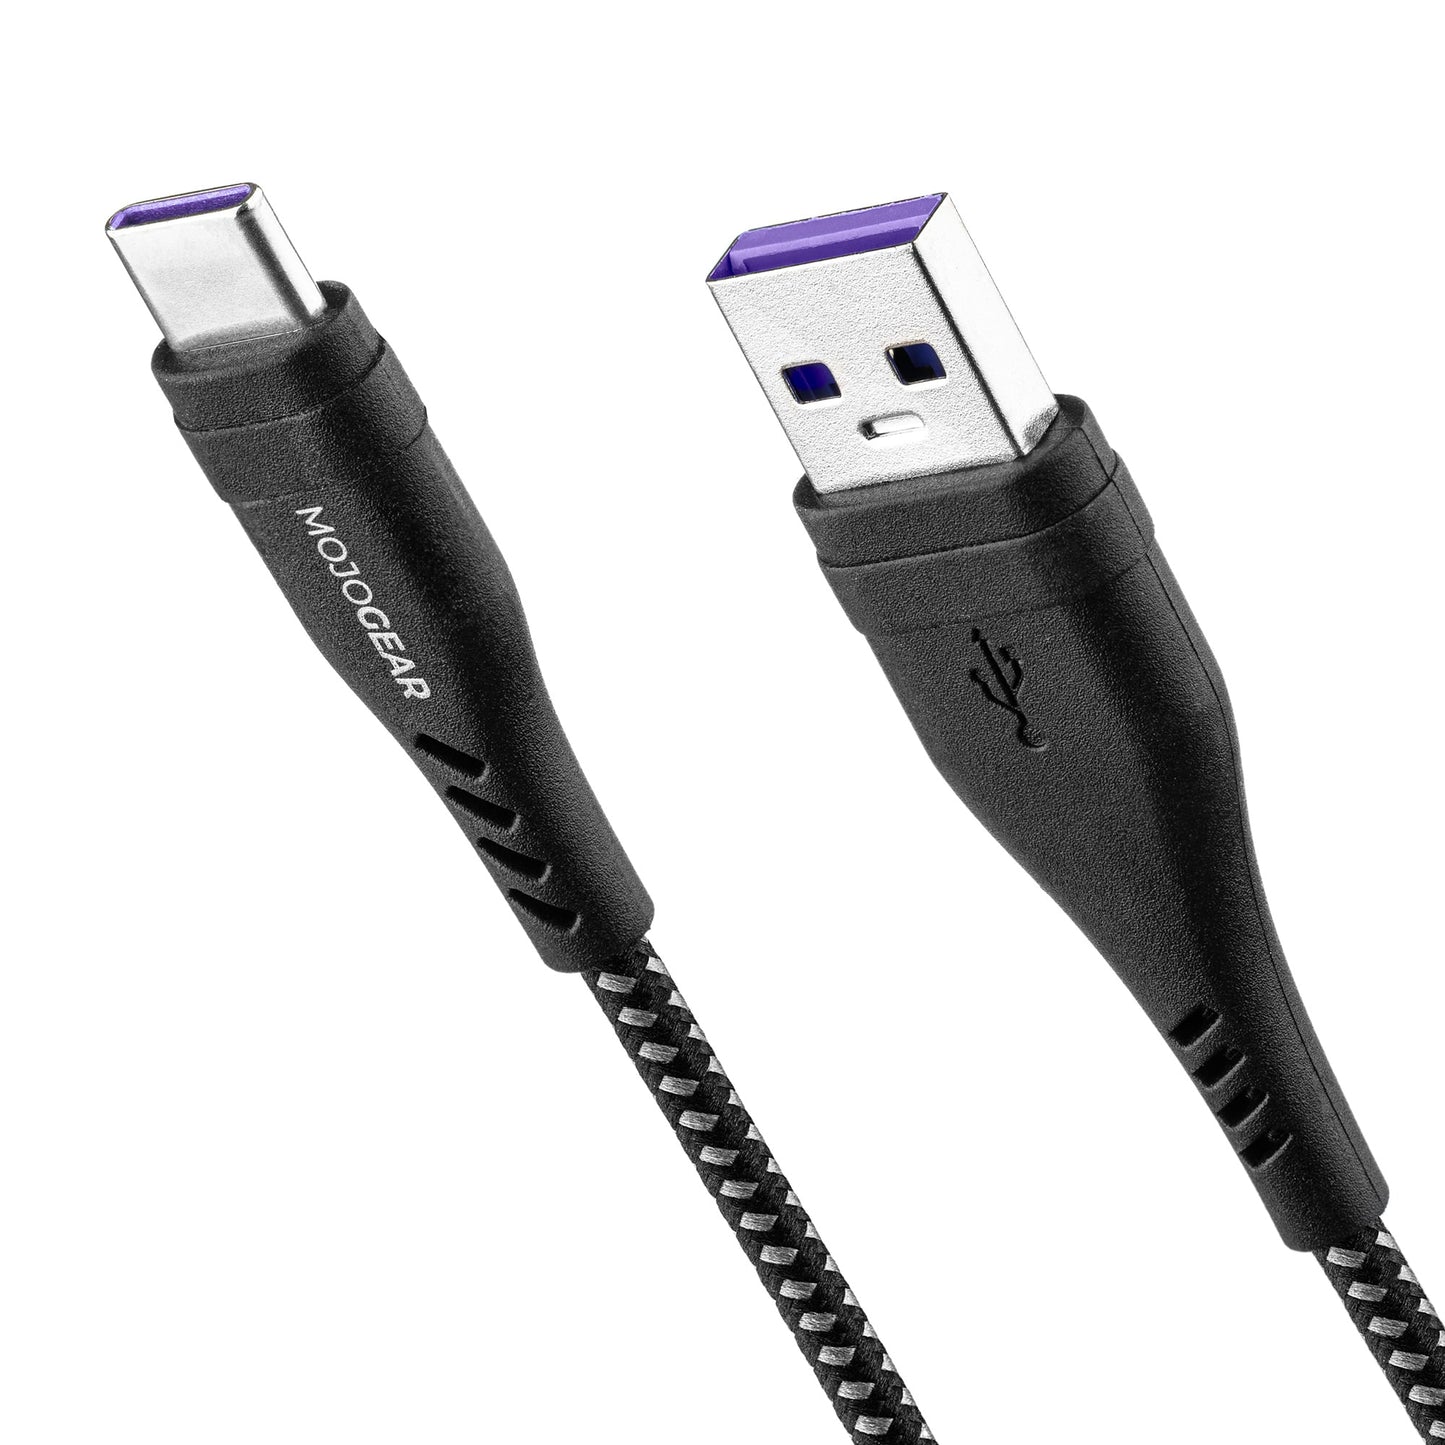 5x MOJOGEAR USB-C naar USB kabel Extra Sterk [VOORDEELVERPAKKING]